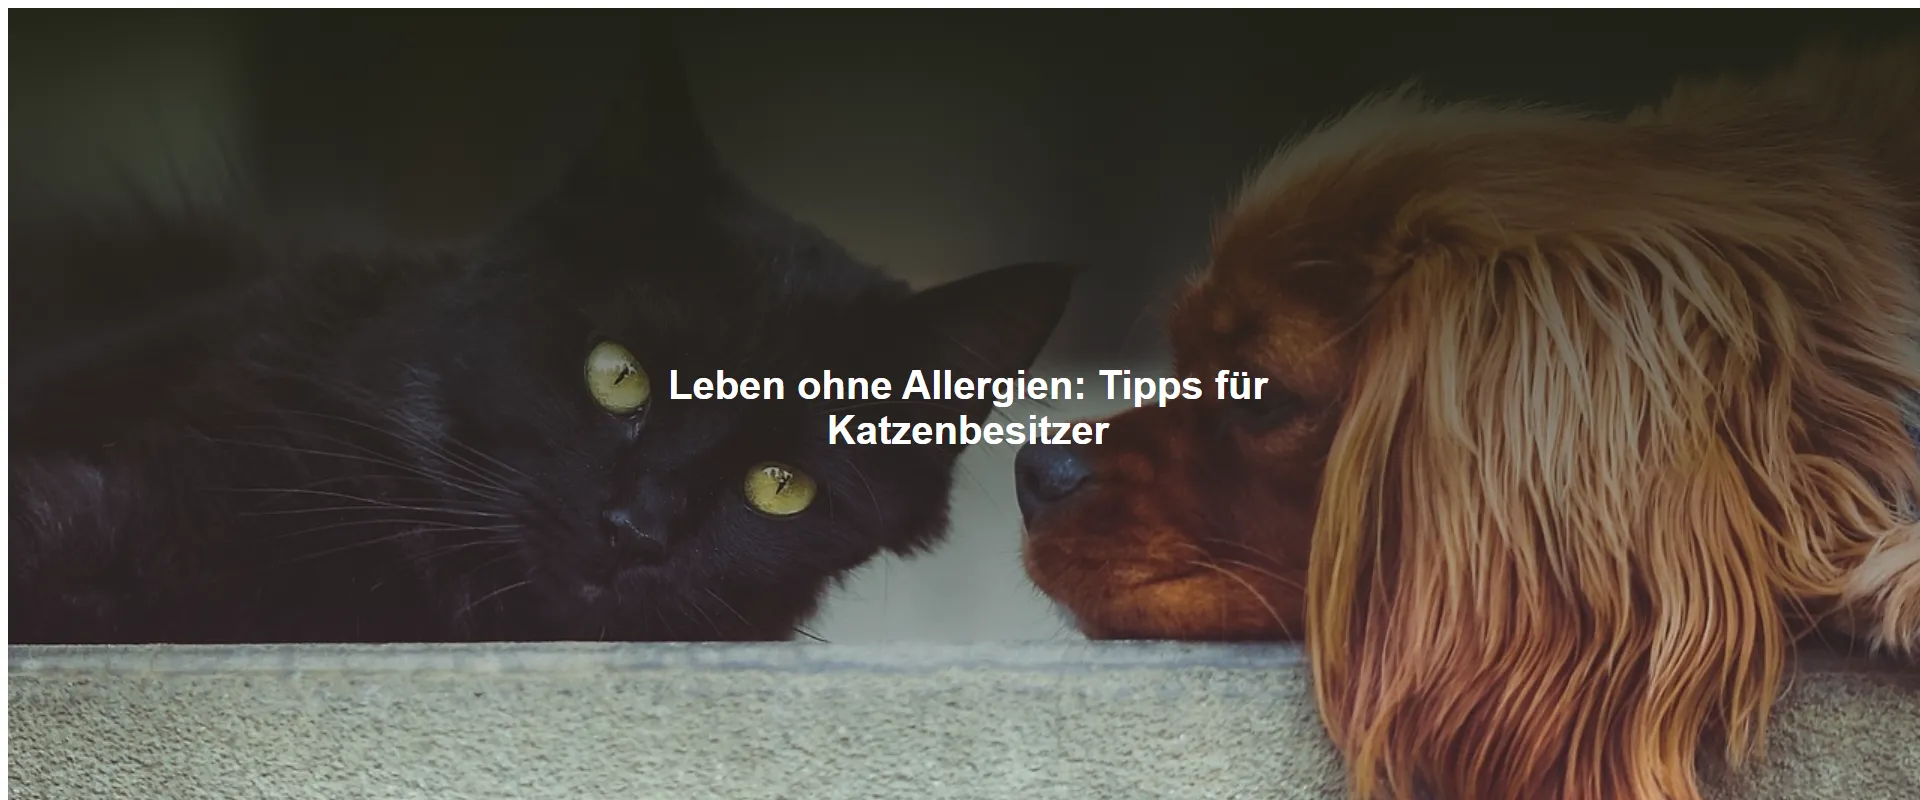 Leben ohne Allergien – Tipps für Katzenbesitzer